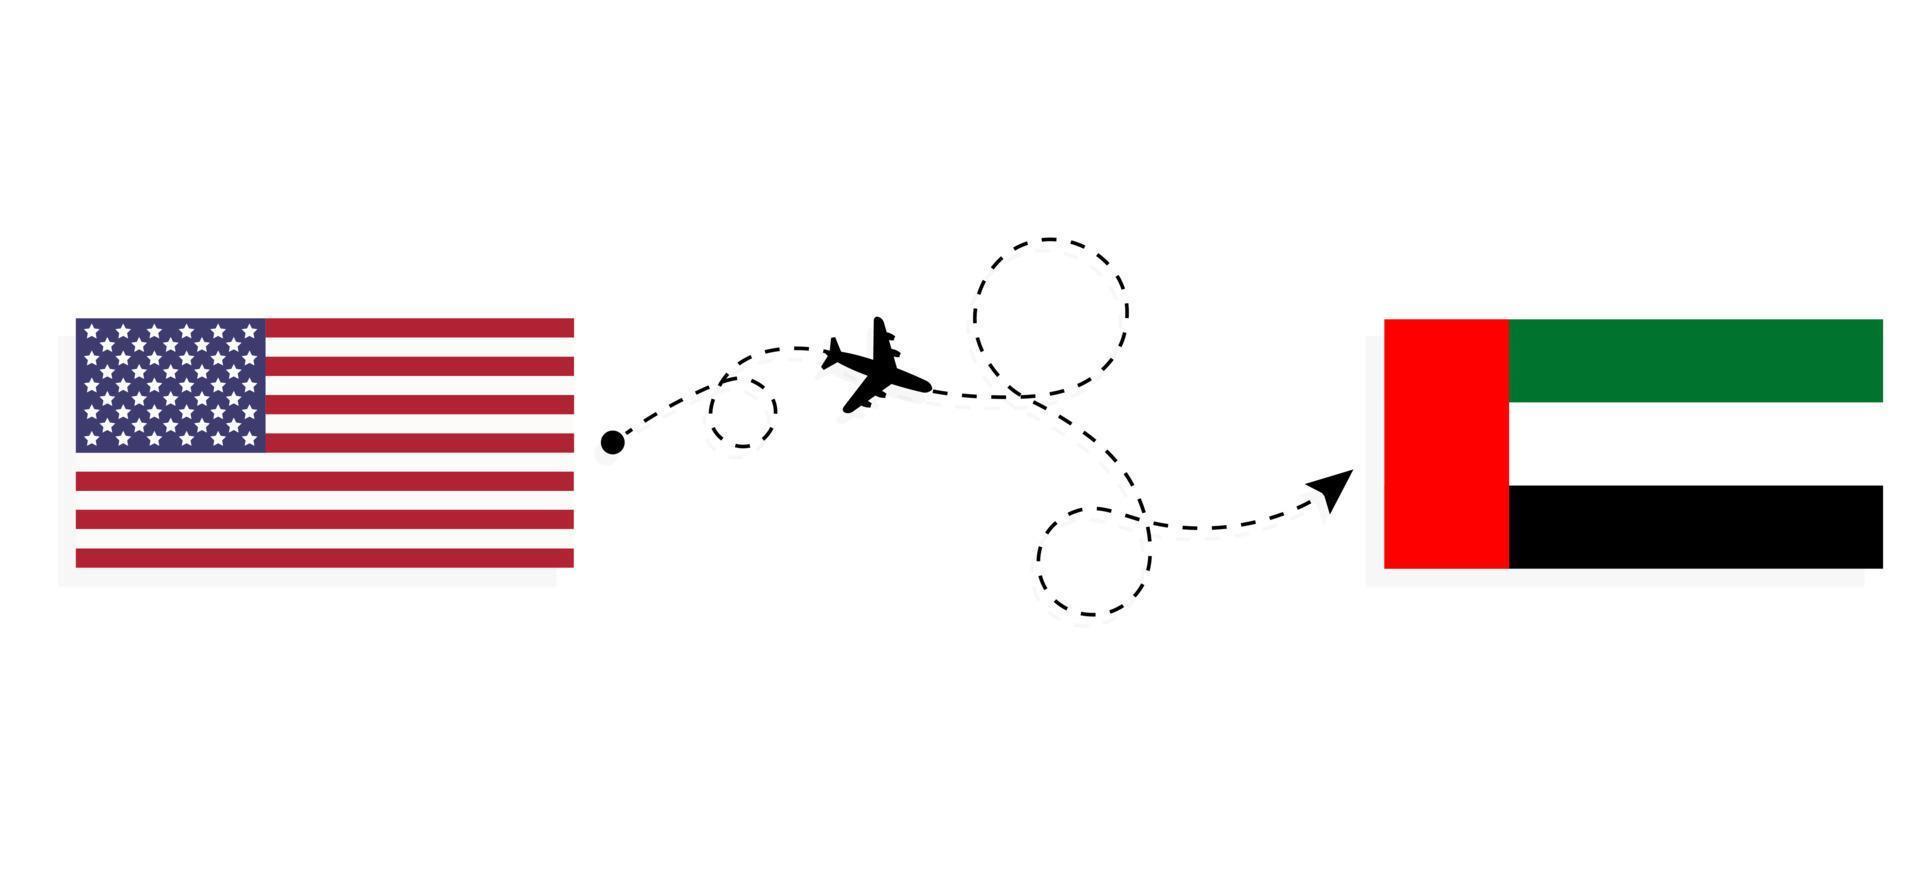 volo e viaggio dagli Stati Uniti agli Emirati Arabi Uniti con il concetto di viaggio in aereo passeggeri vettore